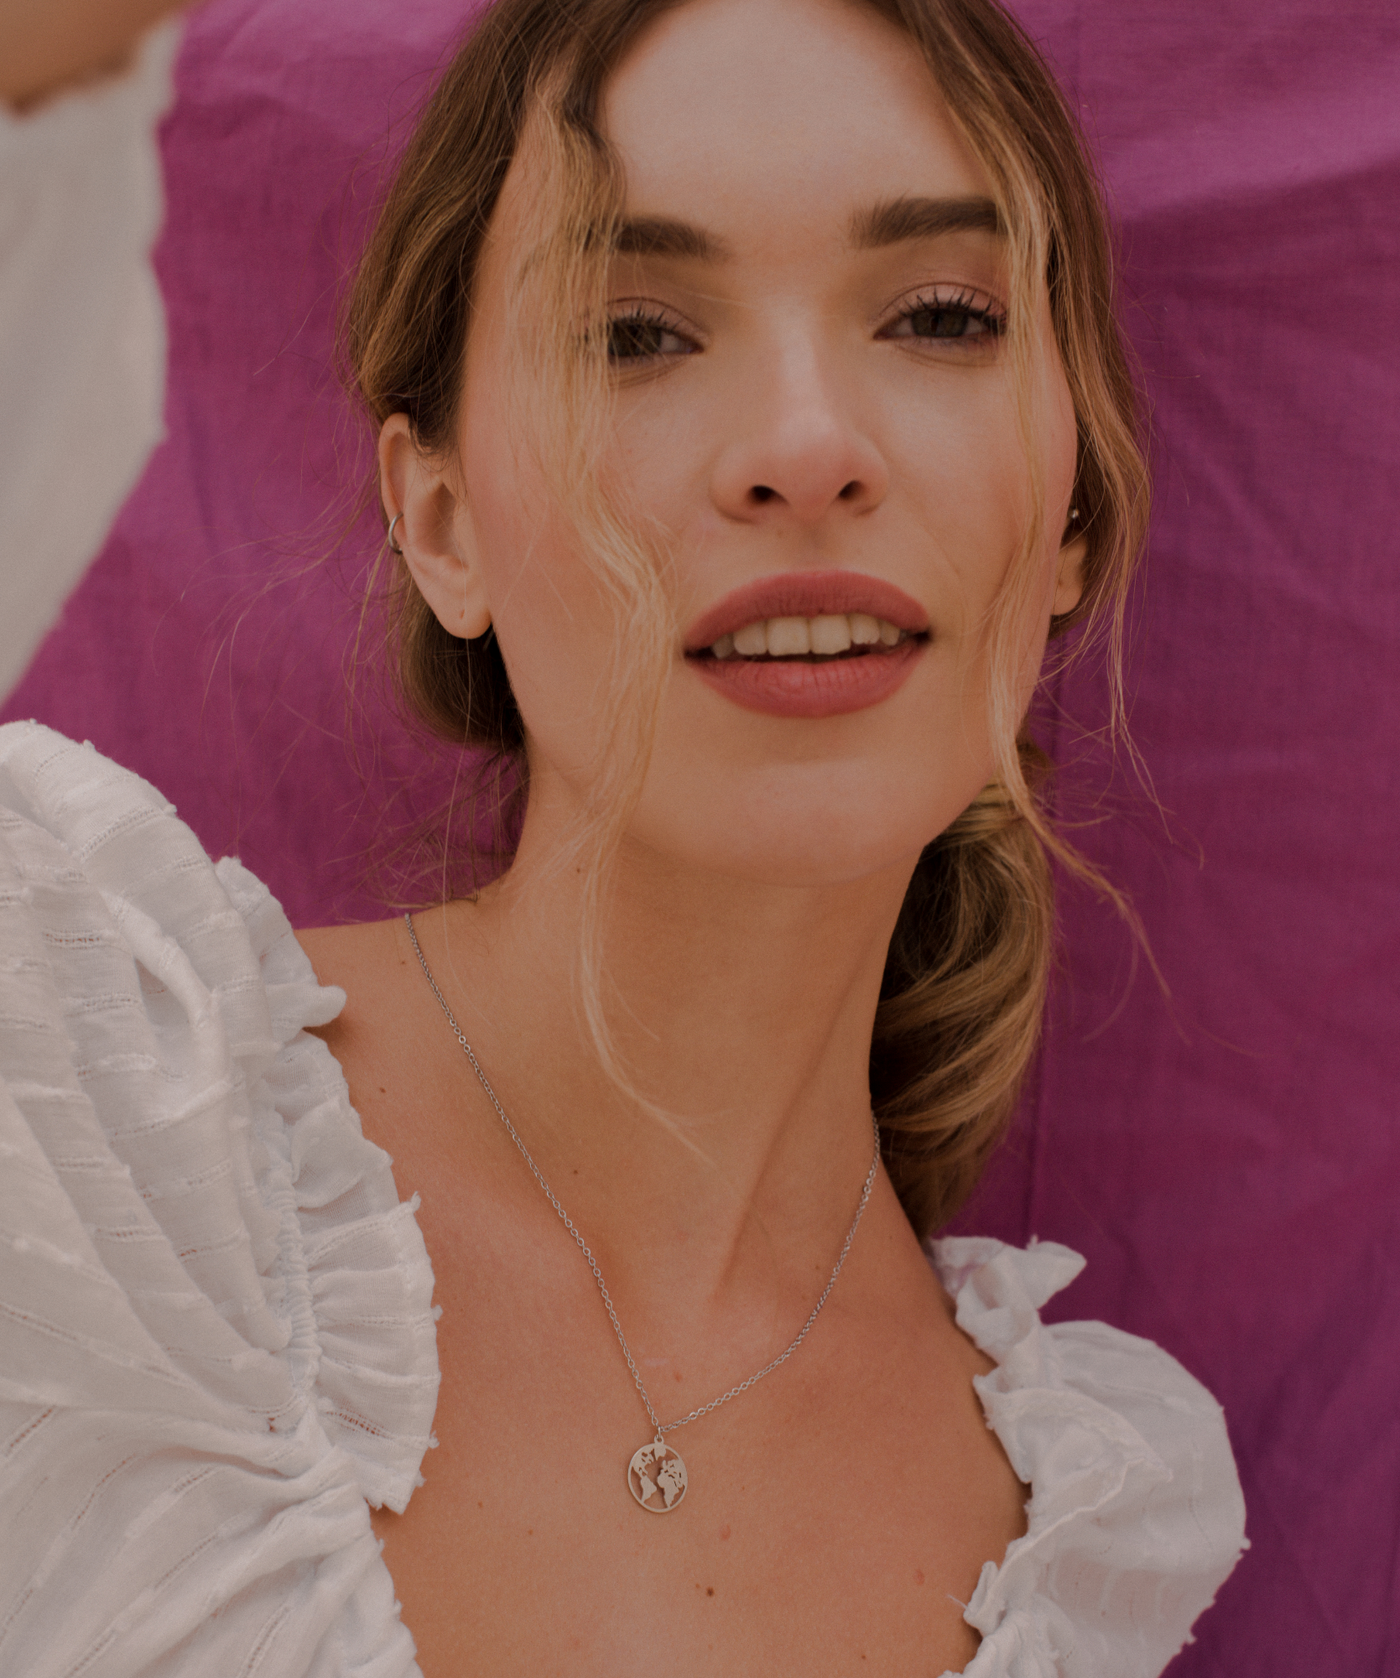 Glückliche Frau trägt feine silberne Kette mit Weltkugel Anhänger im minimalistischen Stil vor pinken Hintergrund